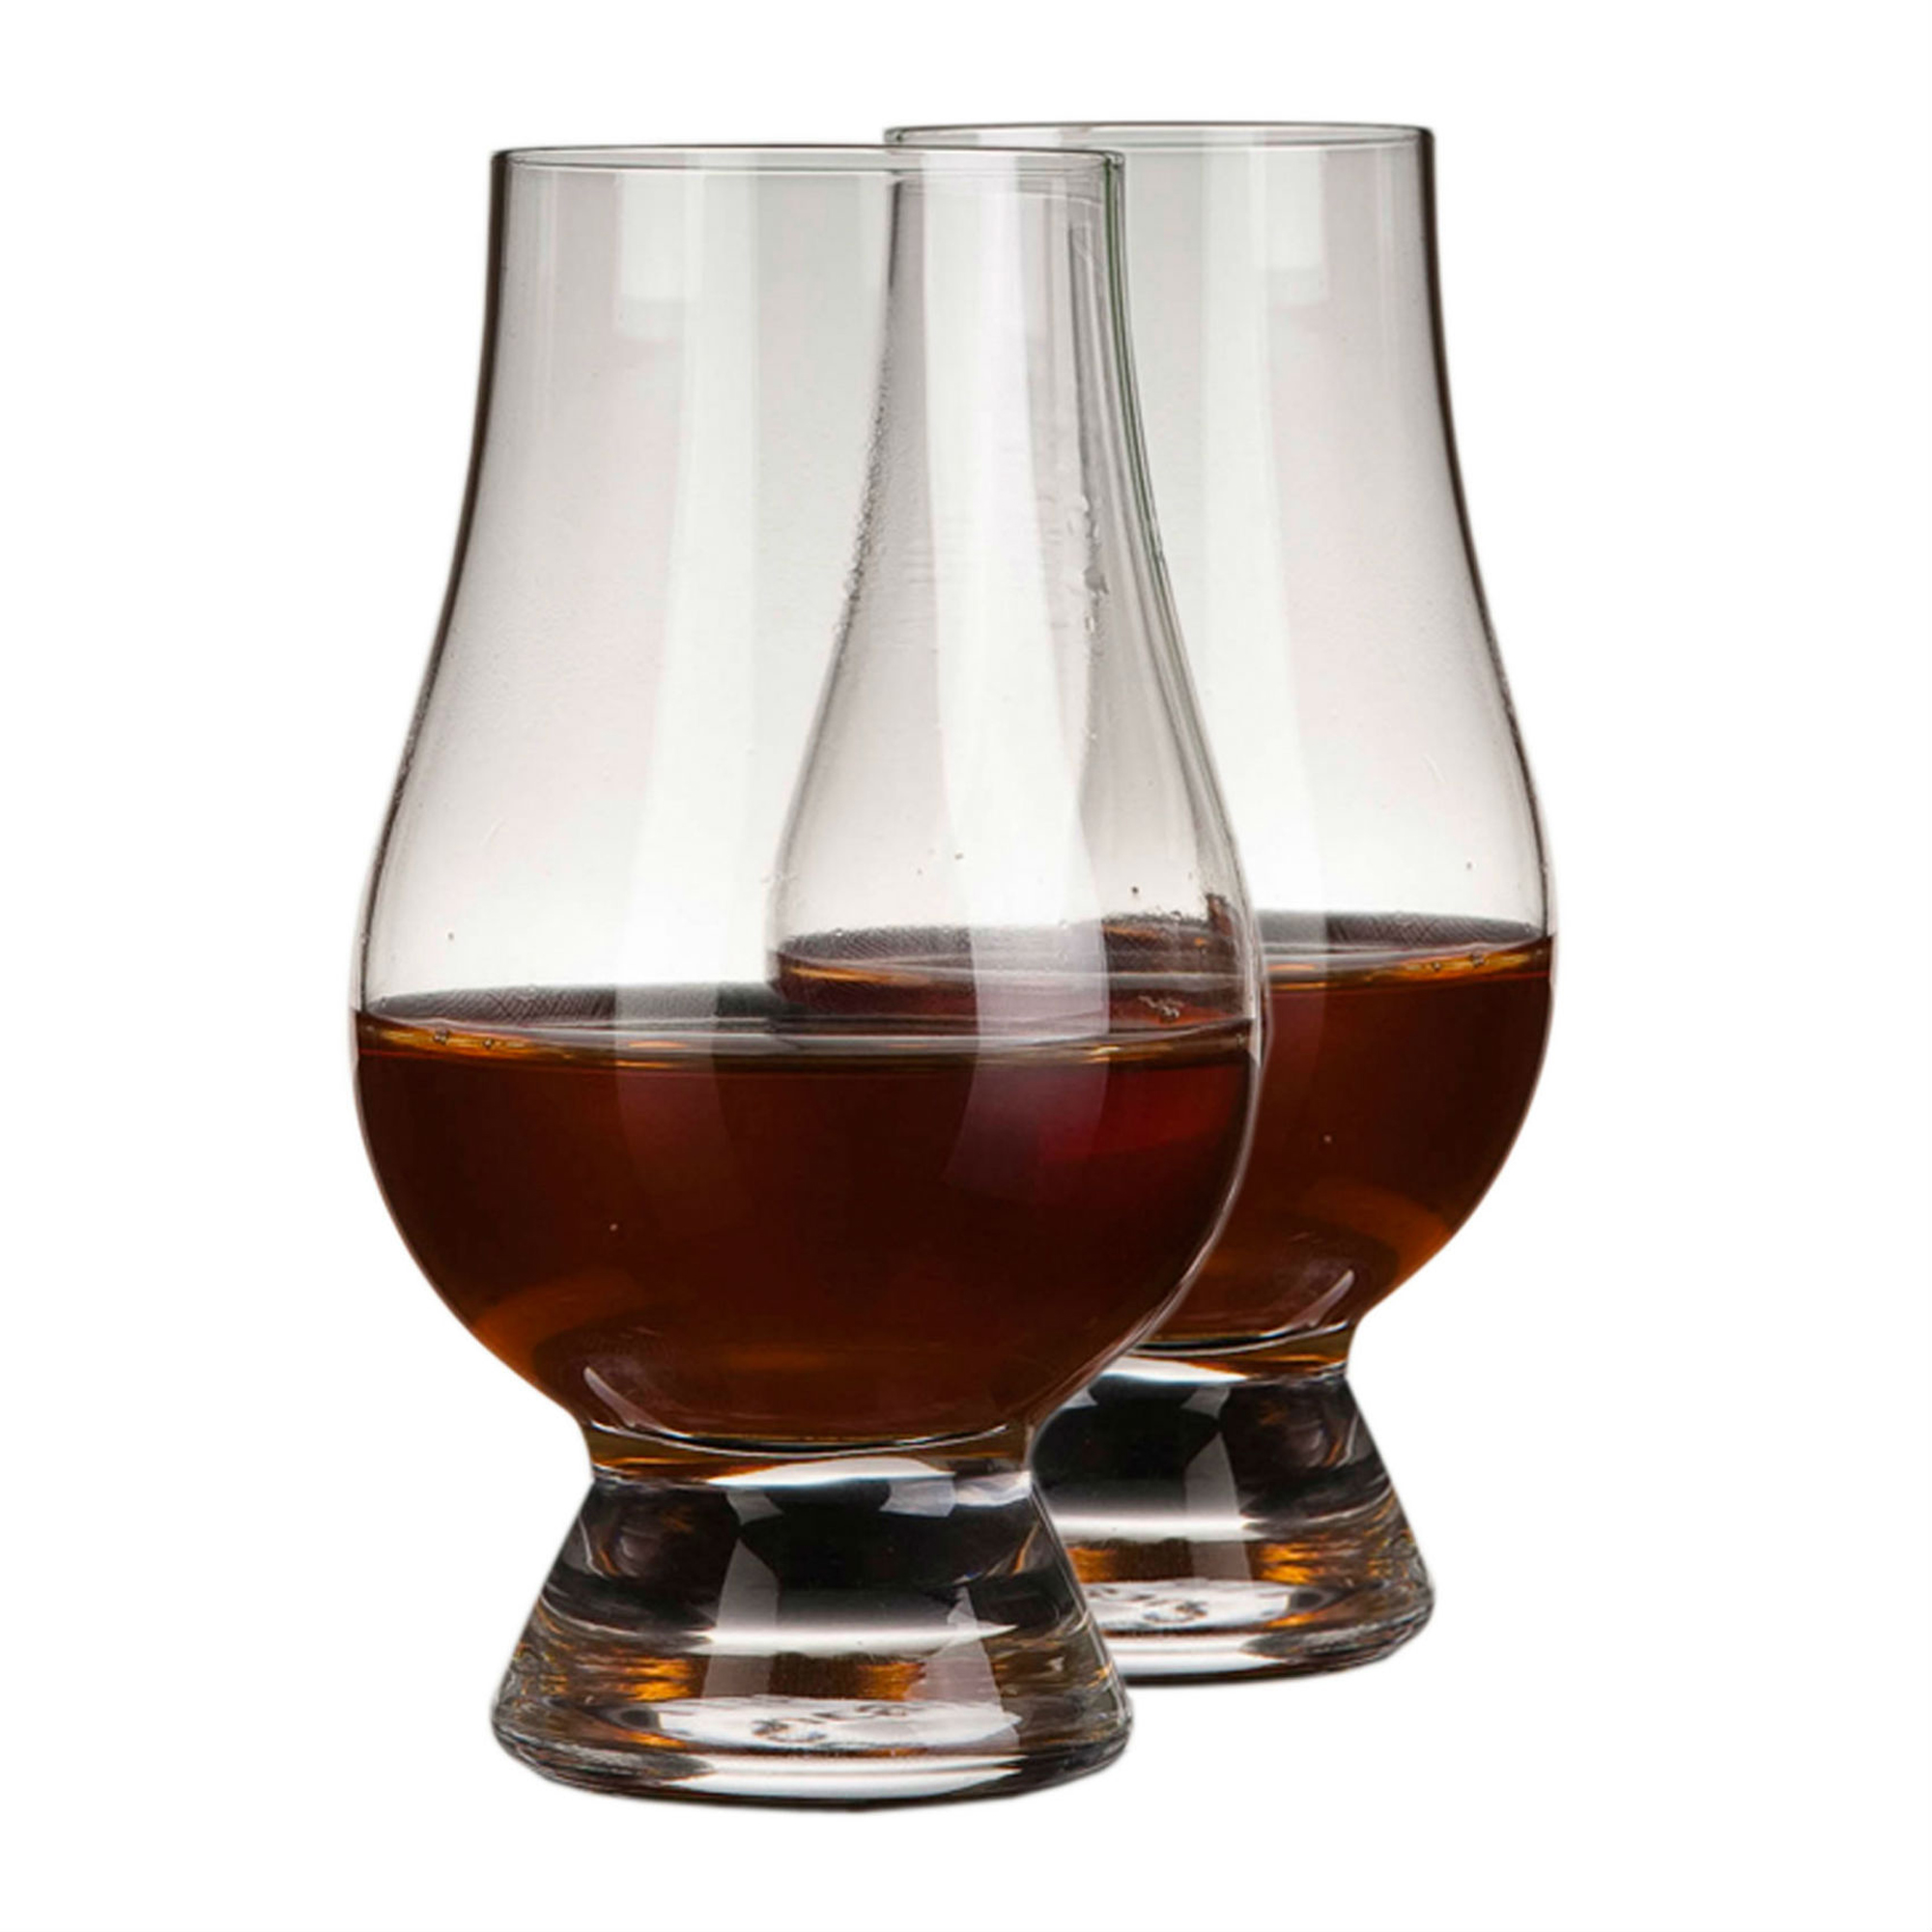 Whiskyprovarglas 2-packproduktzoombild #2